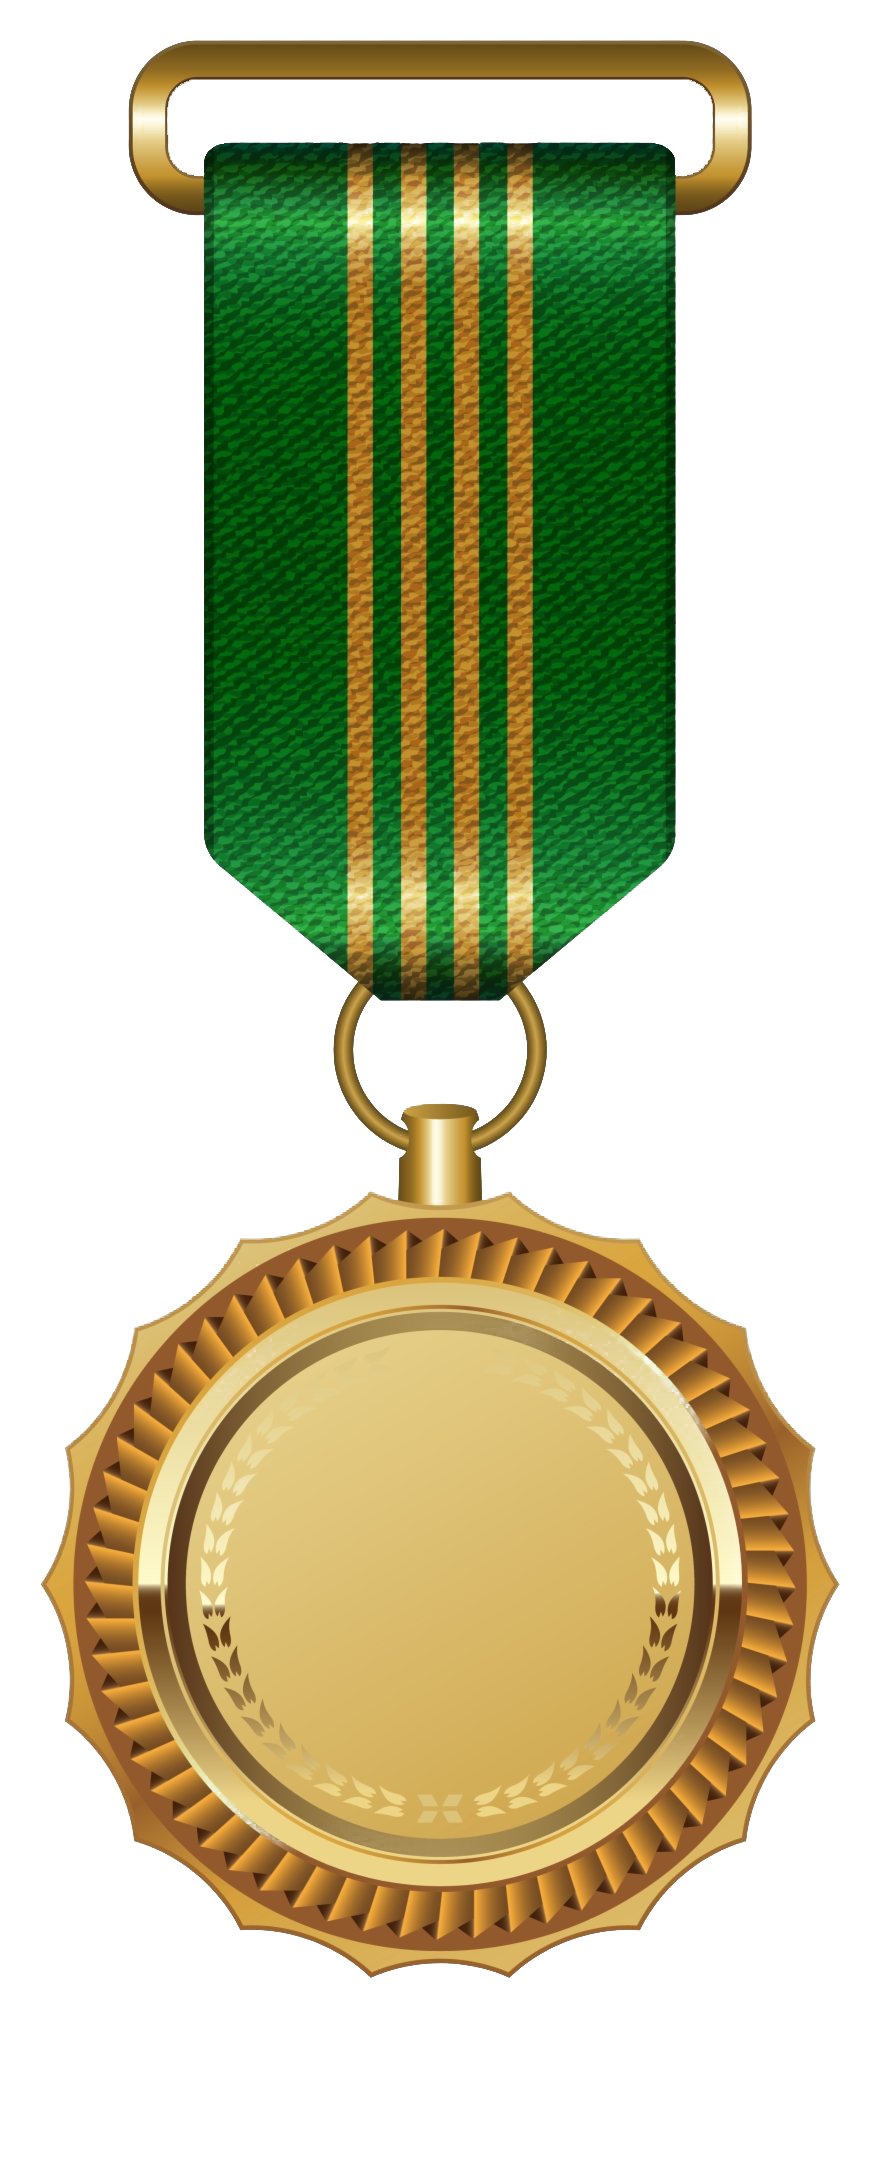 Winner Gold Medal PNG Image Background